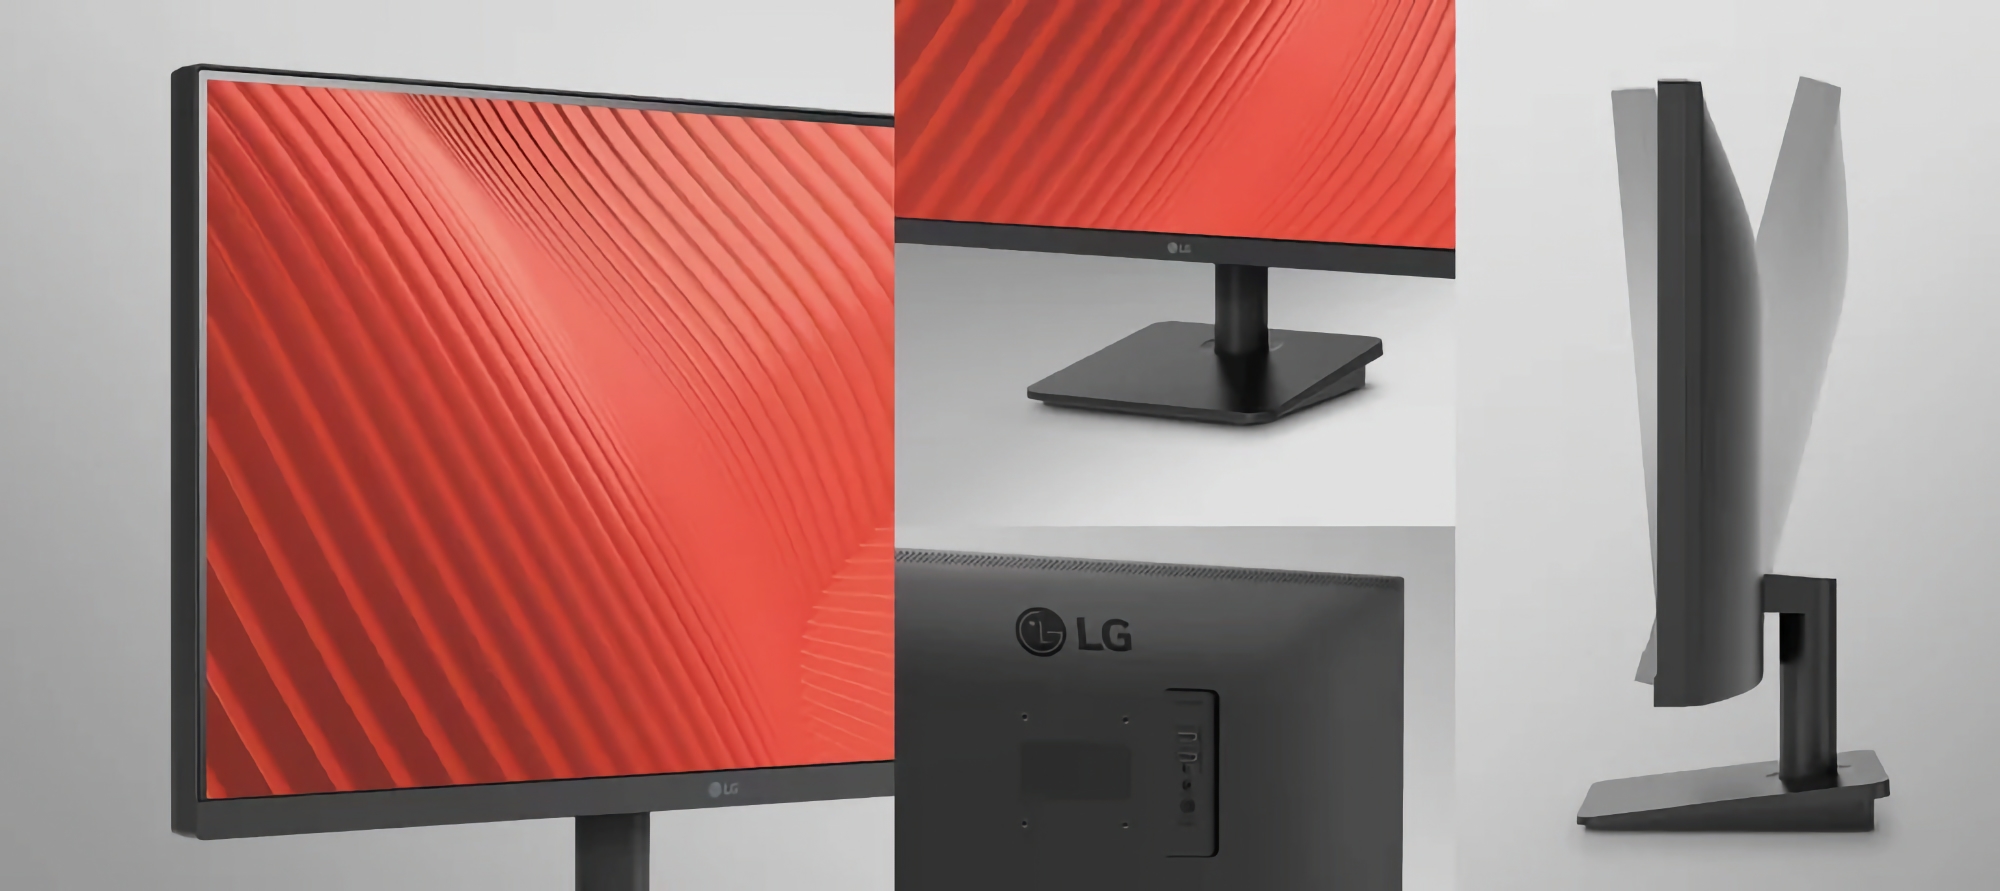 LG zaprezentowało 25MS500: monitor z matrycą IPS, rozdzielczością 1080p i obsługą 100 Hz za 87 dolarów